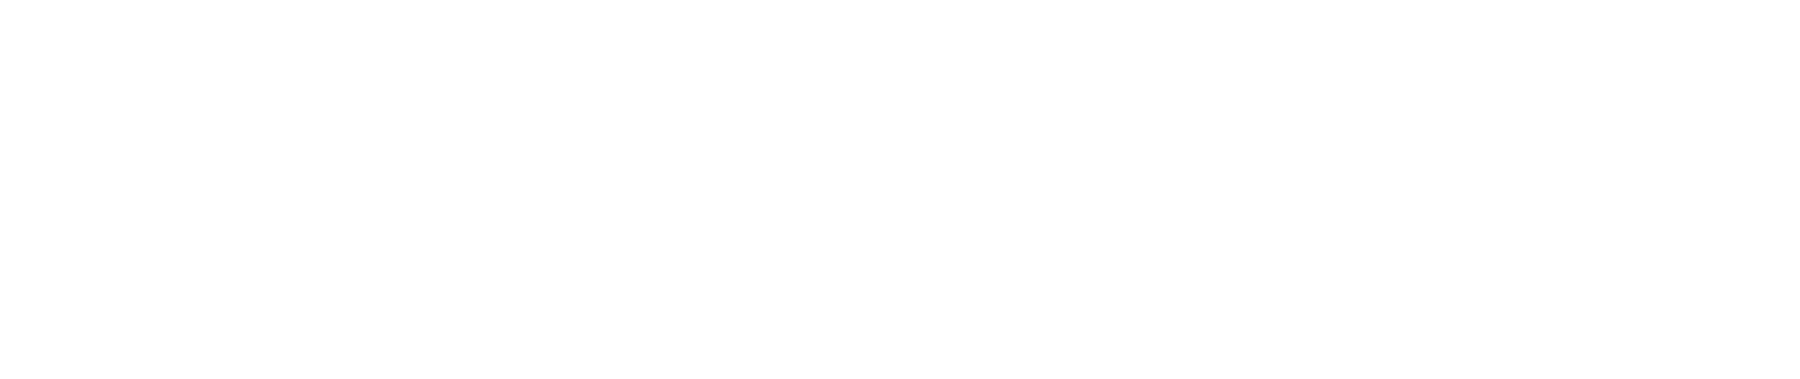 AESC Logo